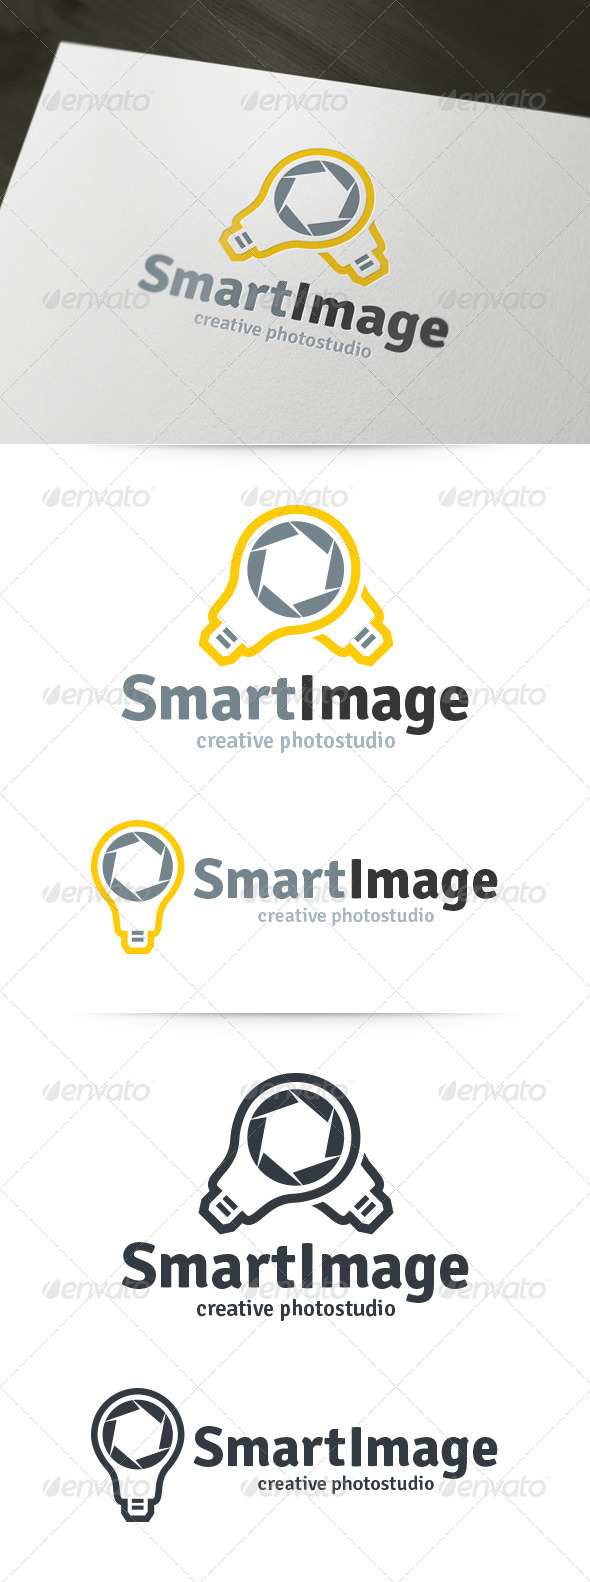 Smart Image - Photography Logo